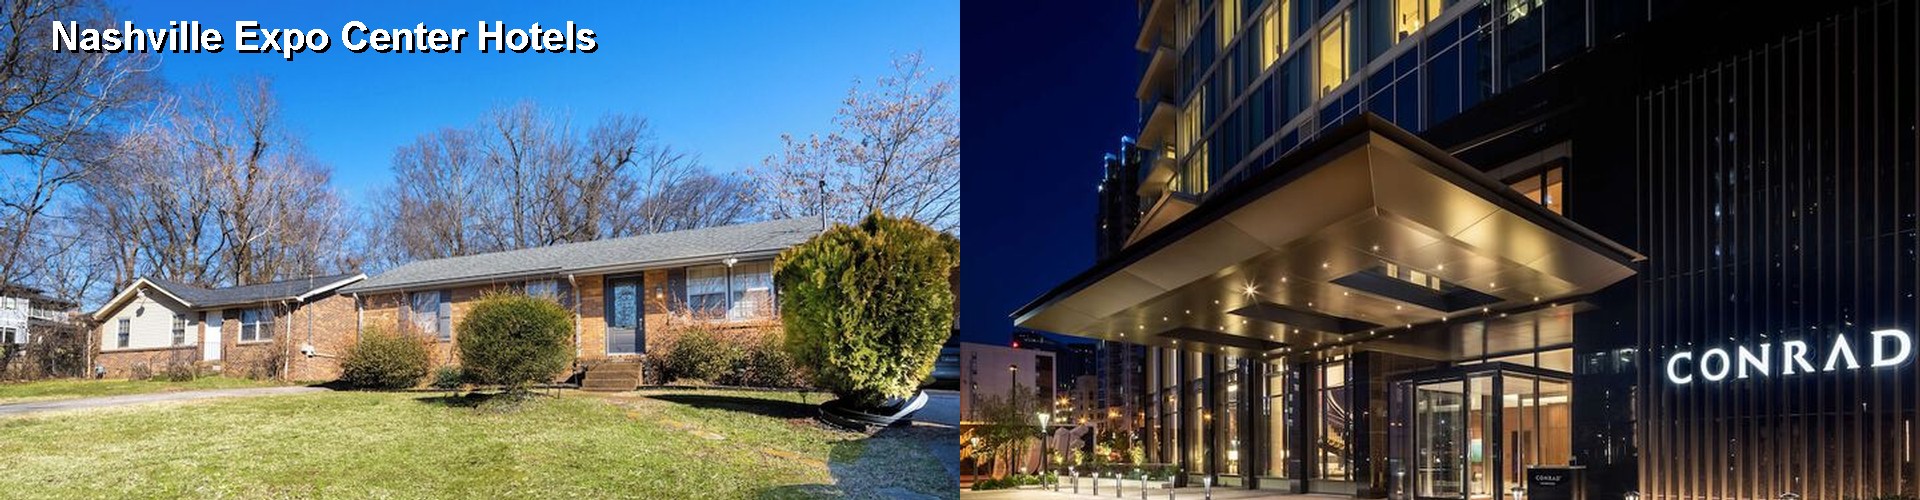 5 Best Hotels near Nashville Expo Center